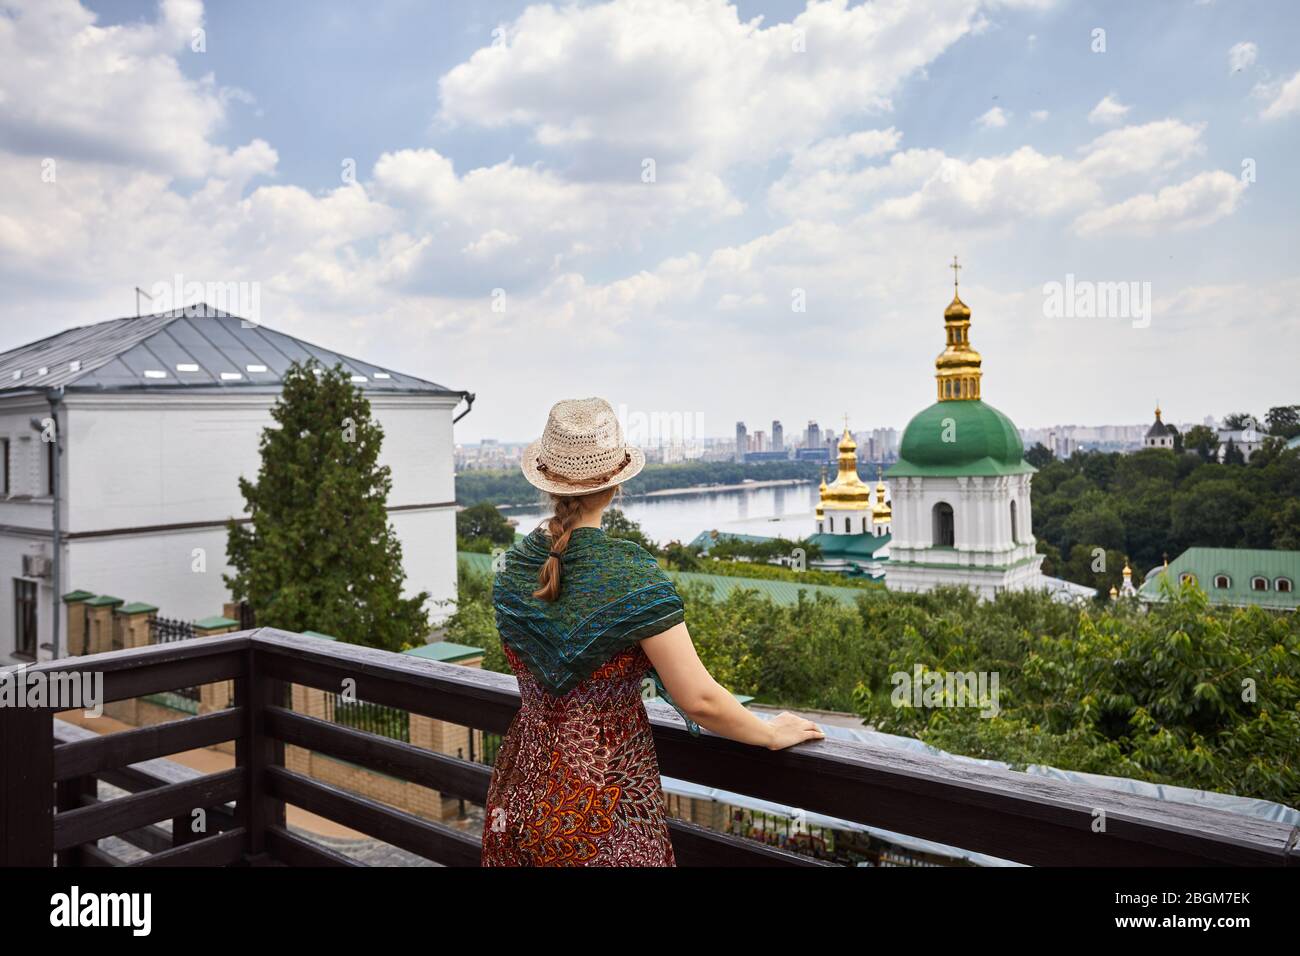 Frau mit Hut mit Schal mit Blick auf die Kirche mit goldenen Kuppeln in Kiew Pechersk Lavra Christian komplex. Alte historische Architektur in Kiew, Ukraine Stockfoto